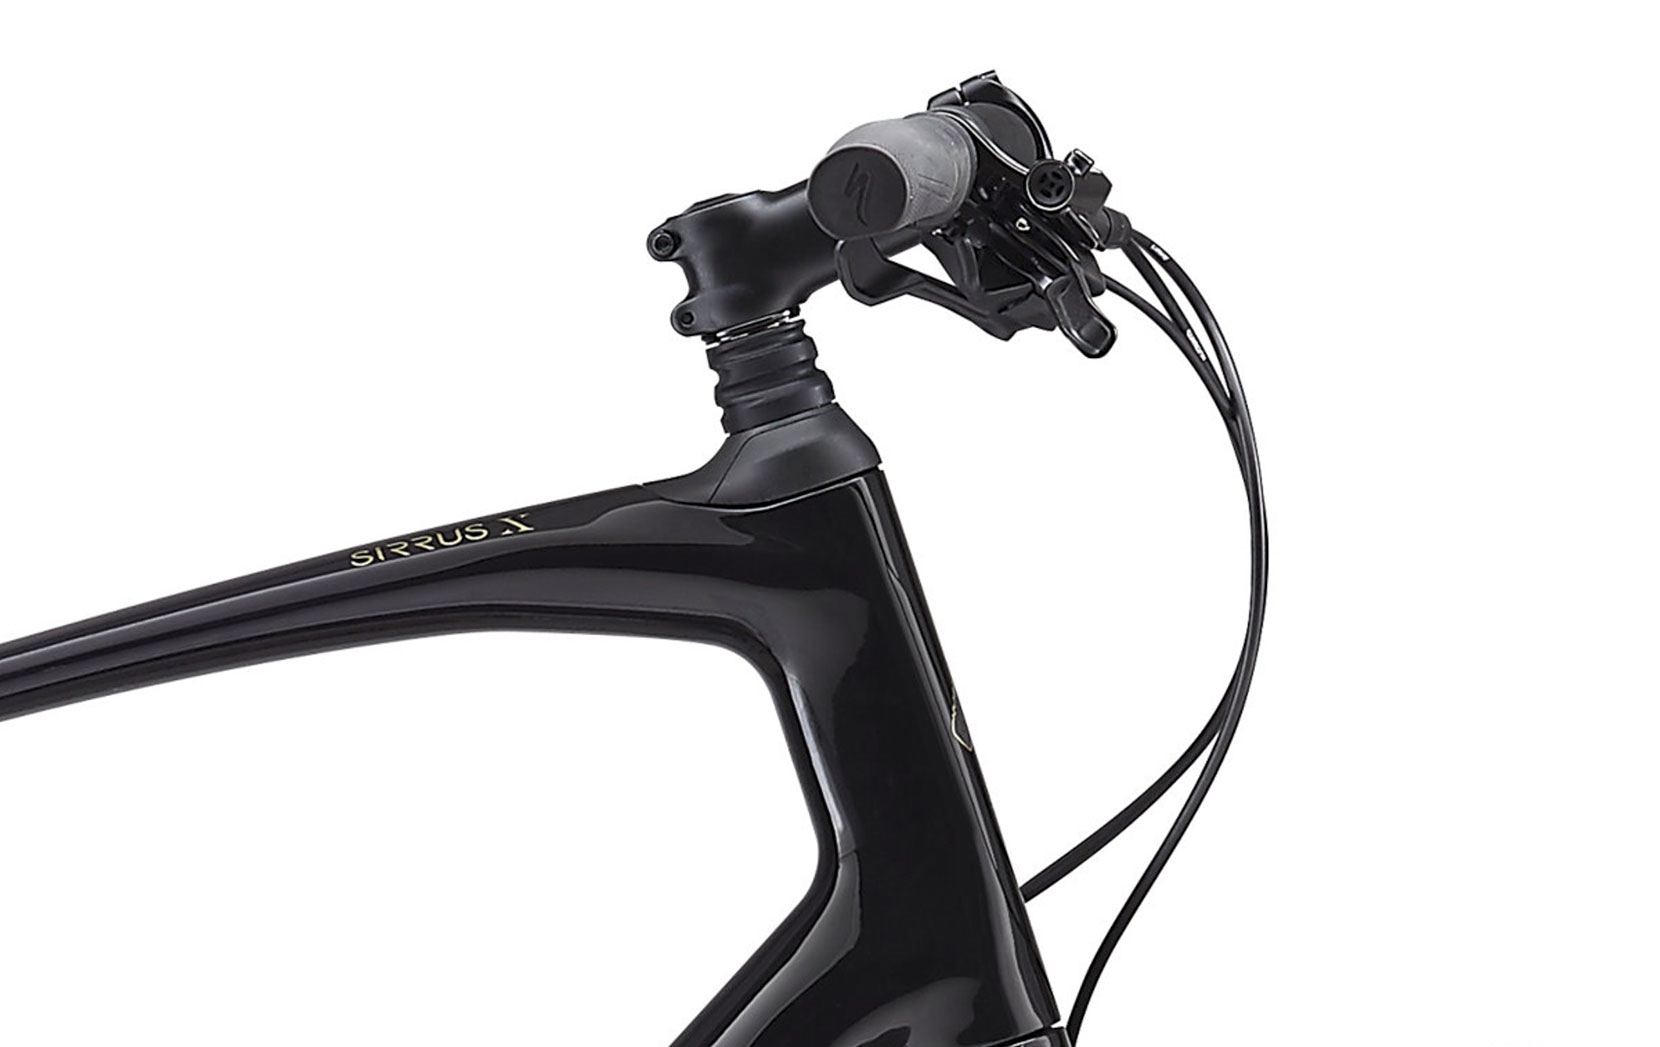 specialized sirrus x comp carbon 2019 hybrid bike